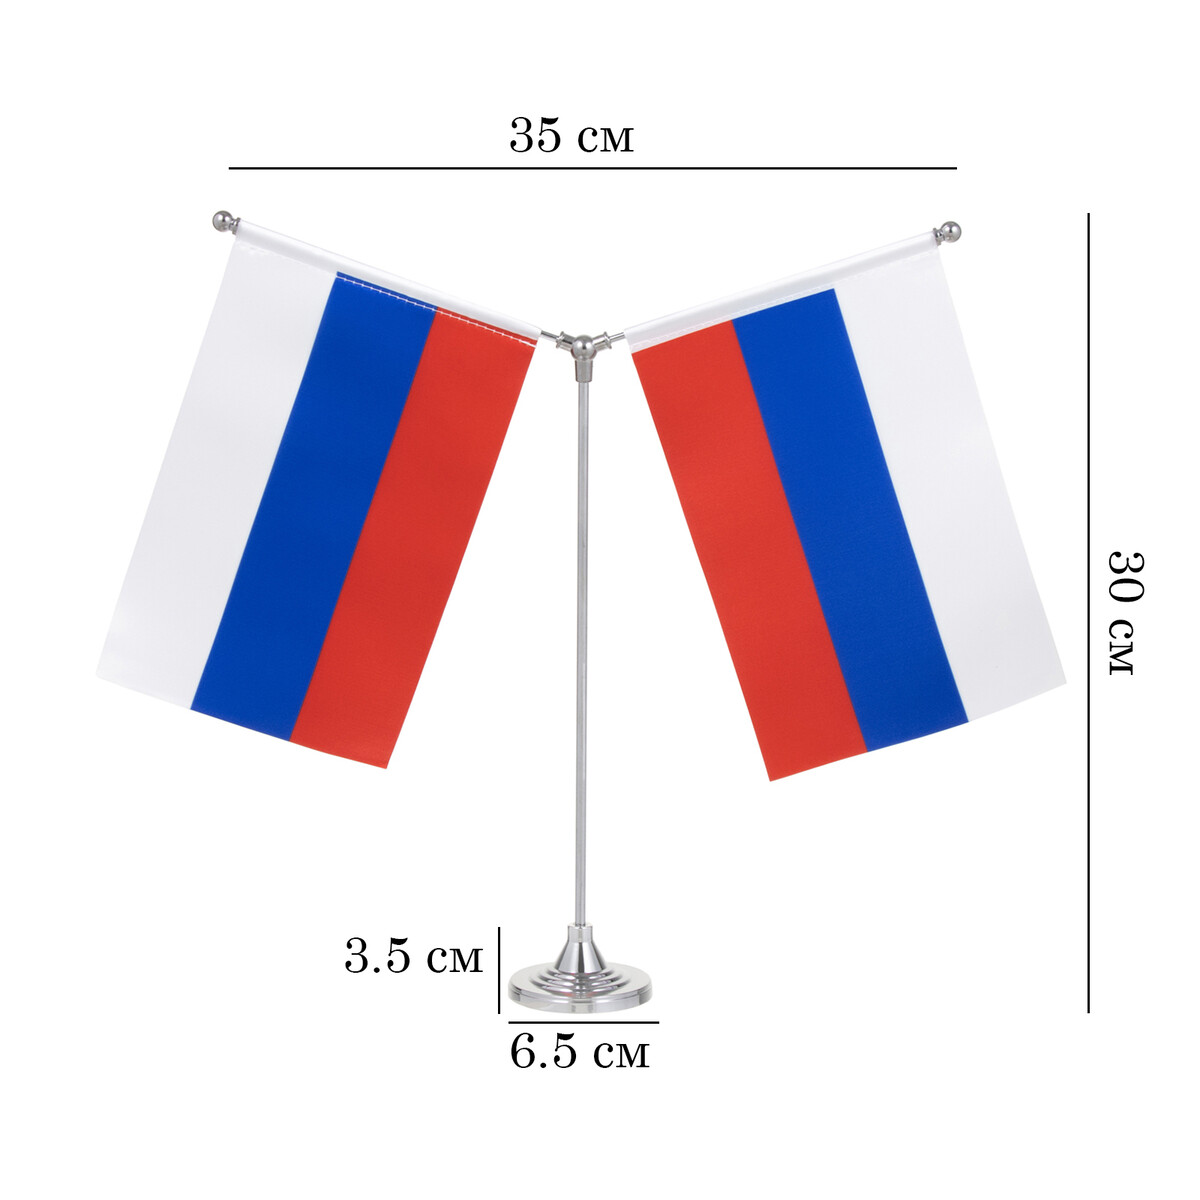 Флагшток настольный с двумя флажками 21 х 14 см, круг 6.5 х 3.5 см, 30 х 35 см, серебро флаг россии настольный